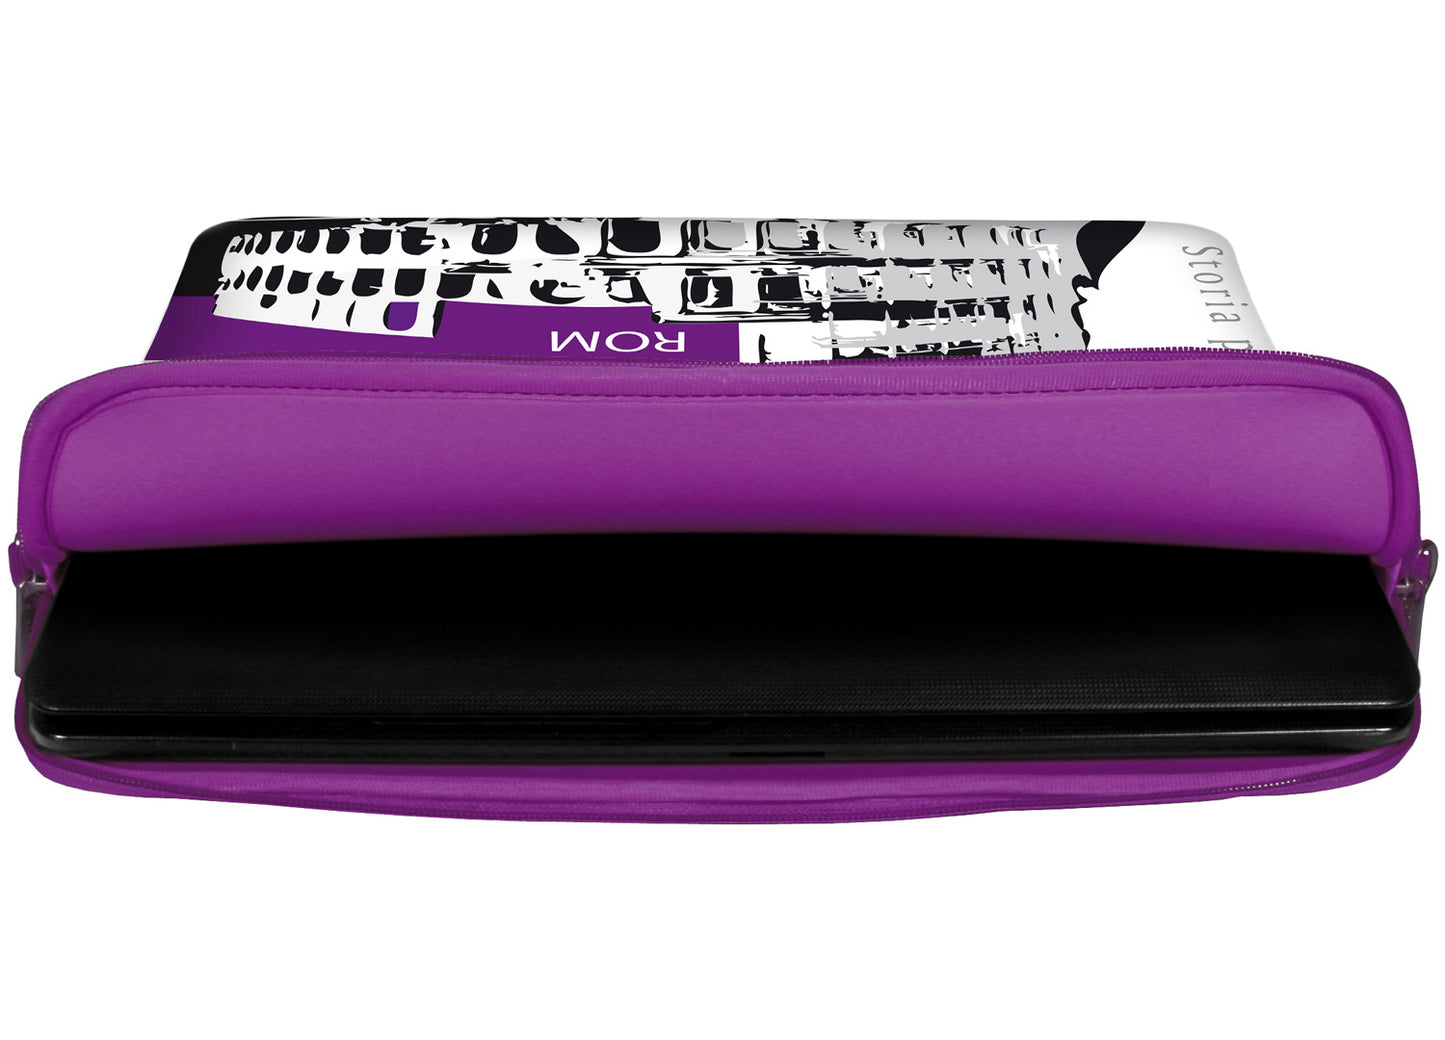 Innenansicht mit Schutzlippen der LS137 Rom Designer Tasche für Laptop in violett aus wasserabweisendem Neopren